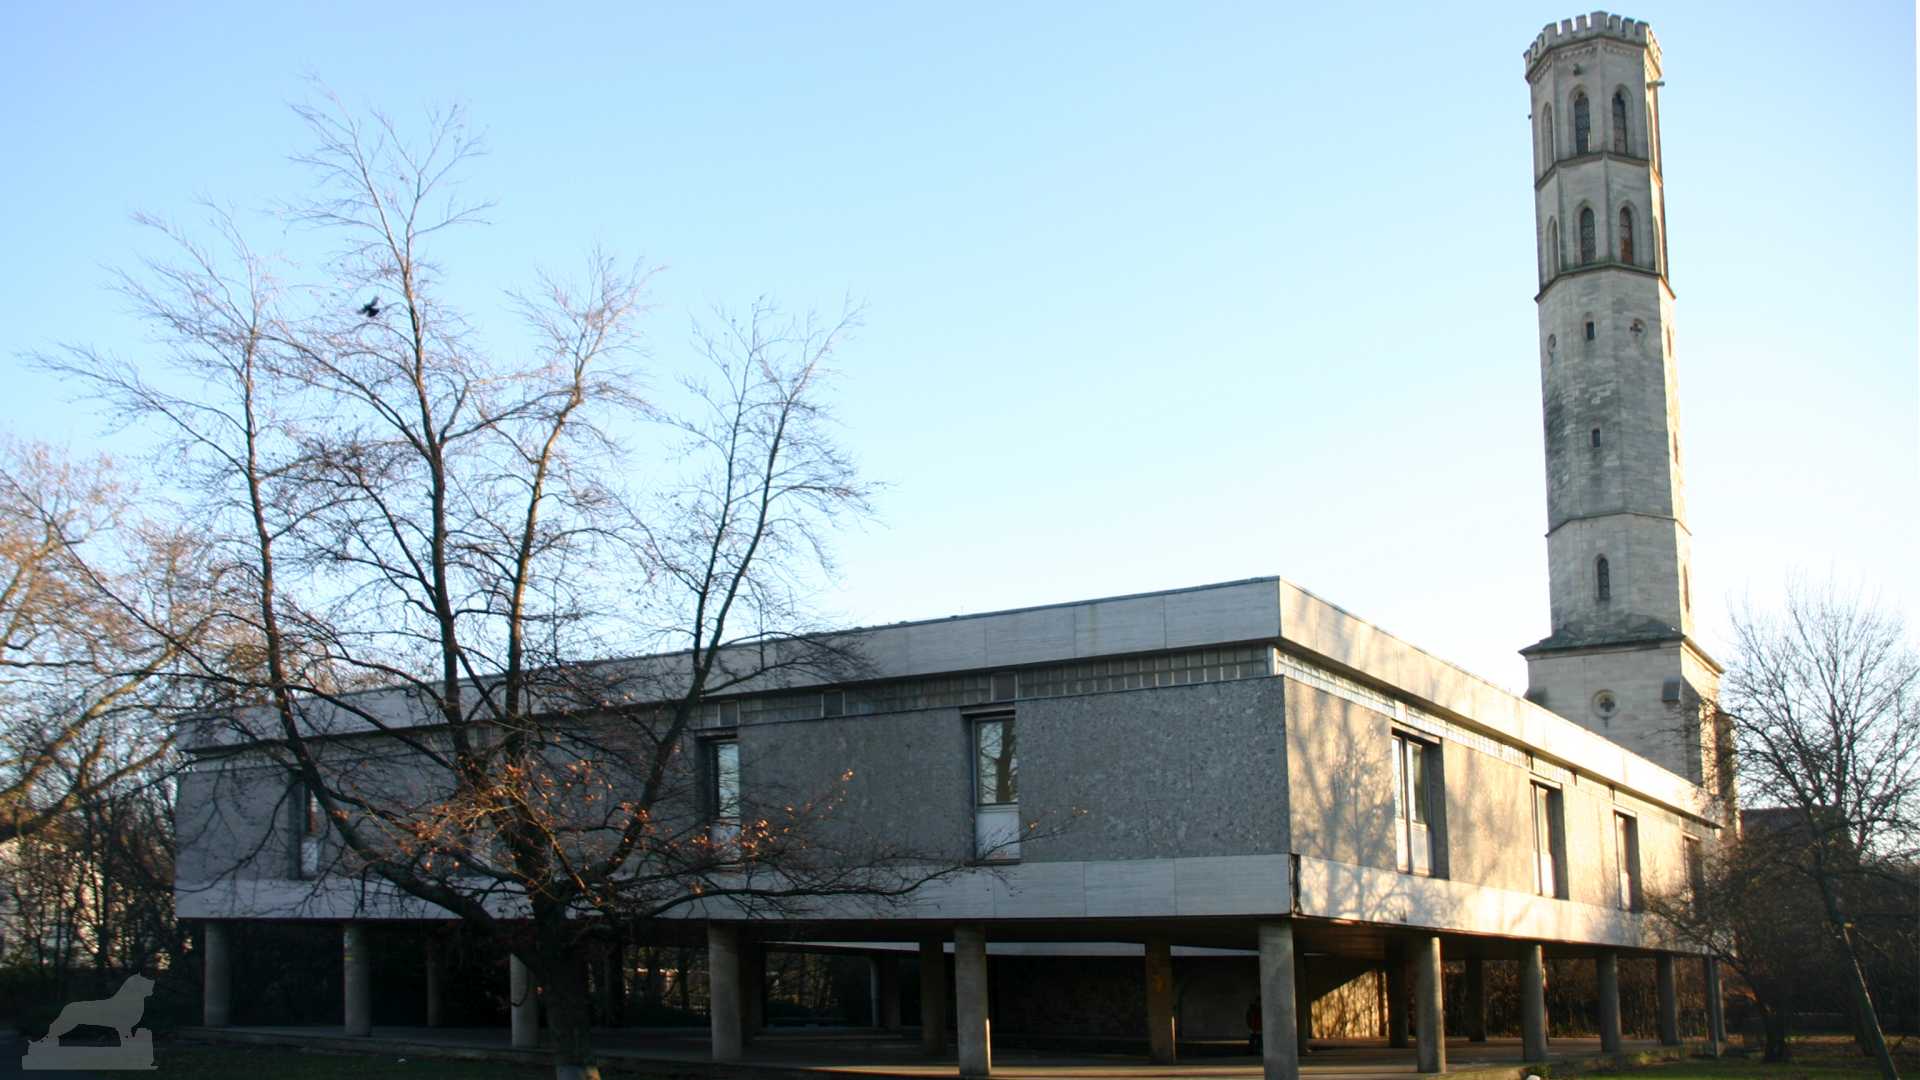 ehemaliges Freizeit und Bildungszentrum (FBZ) am Bürgerpark